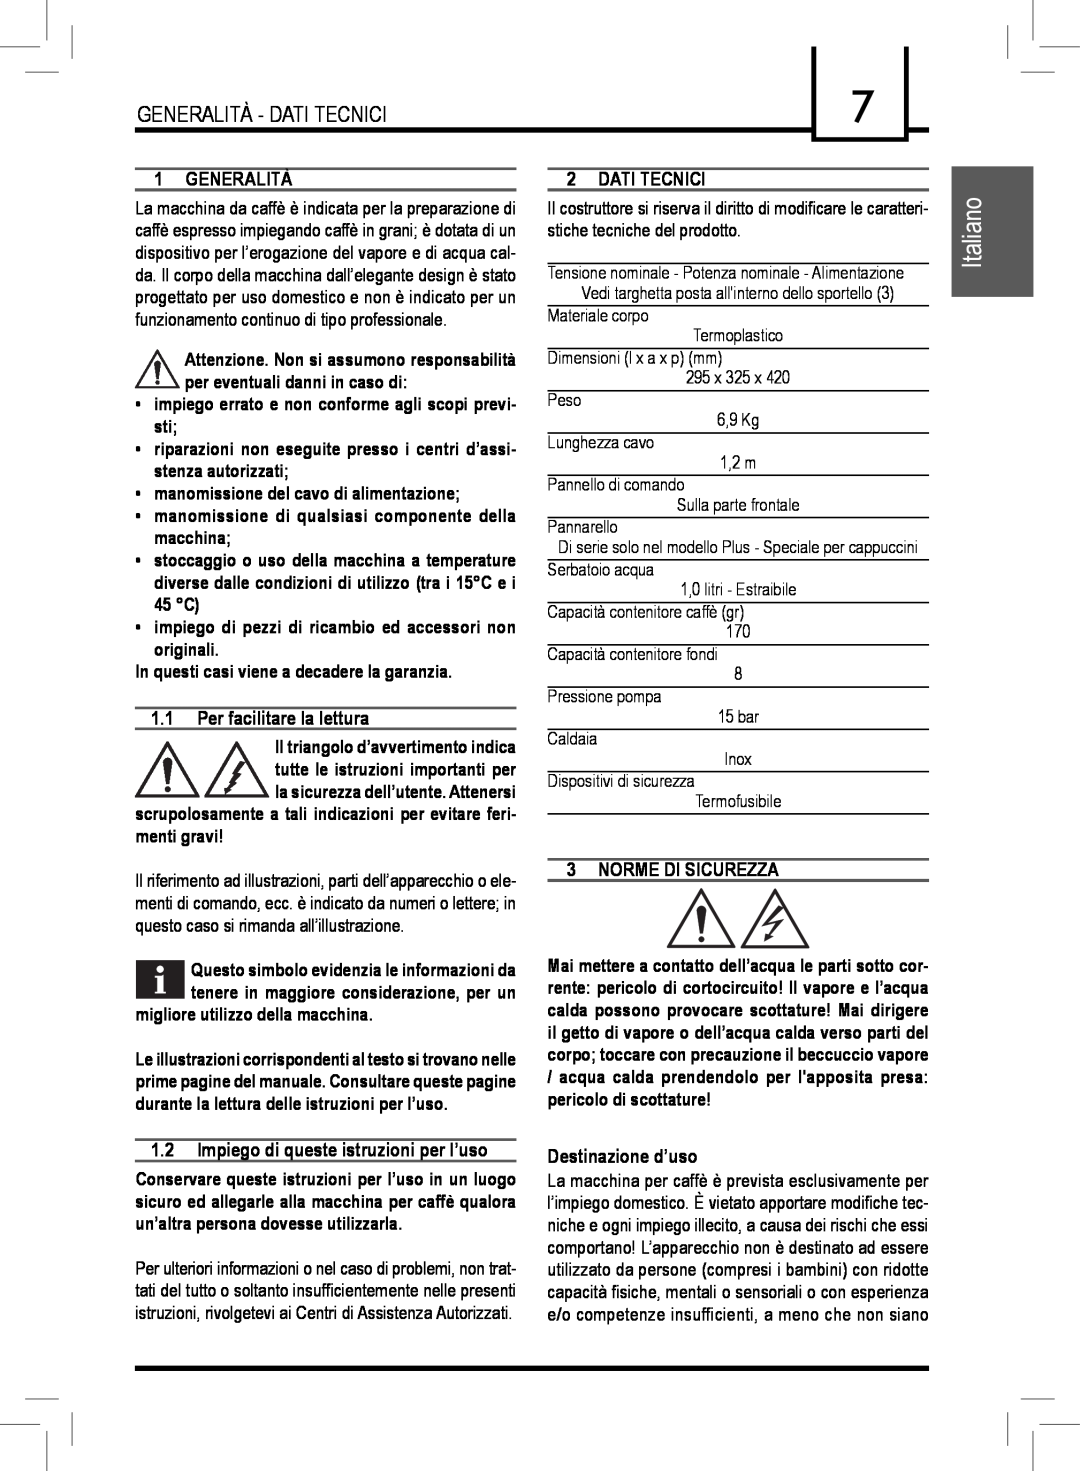 Saeco Coffee Makers PLUS manual Italiano, Generalità, Per facilitare la lettura, Dati Tecnici, Norme Di Sicurezza 